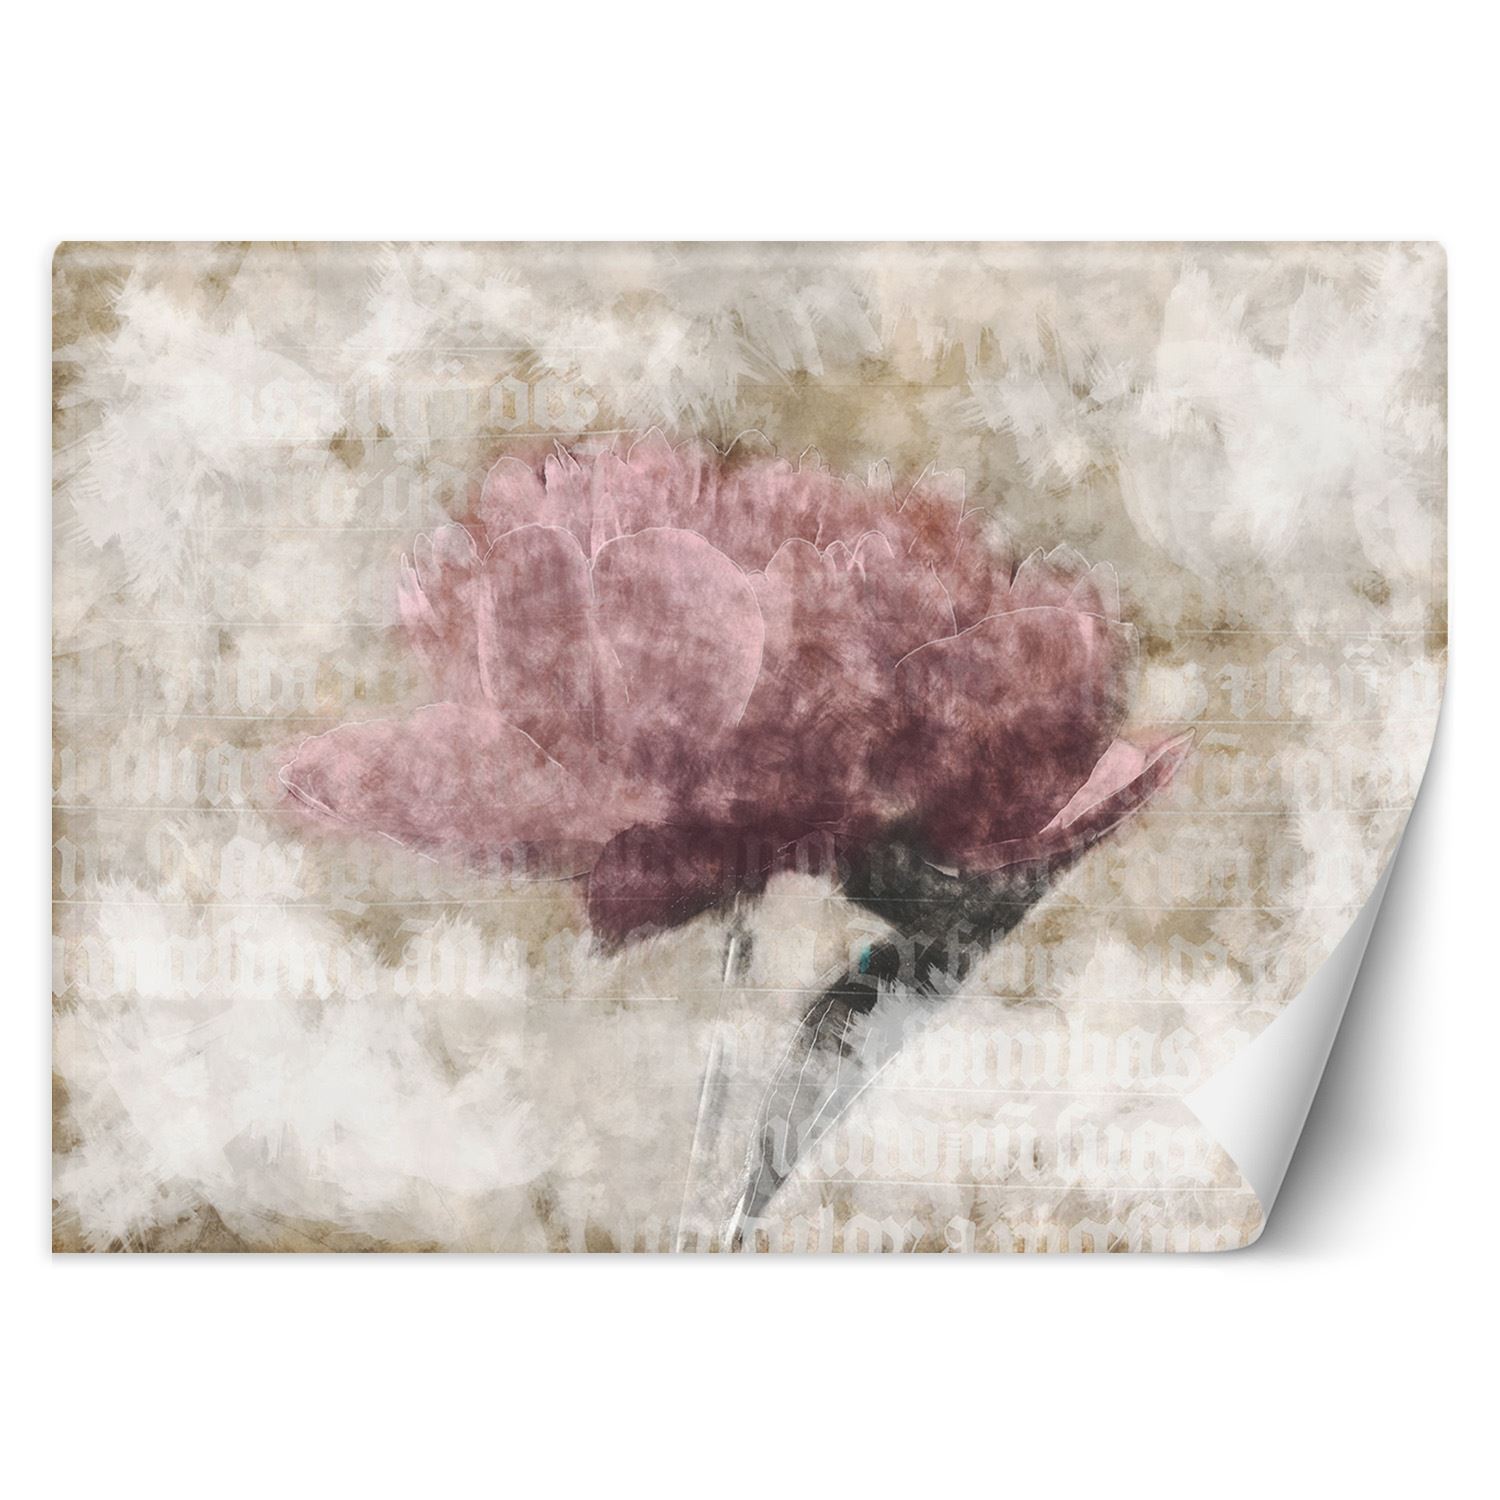 Trend24 – Behang – Abstracte Bloemen In Pastelkleuren – Vliesbehang – Fotobehang 3D – Behang Woonkamer – 450×315 cm – Incl. behanglijm